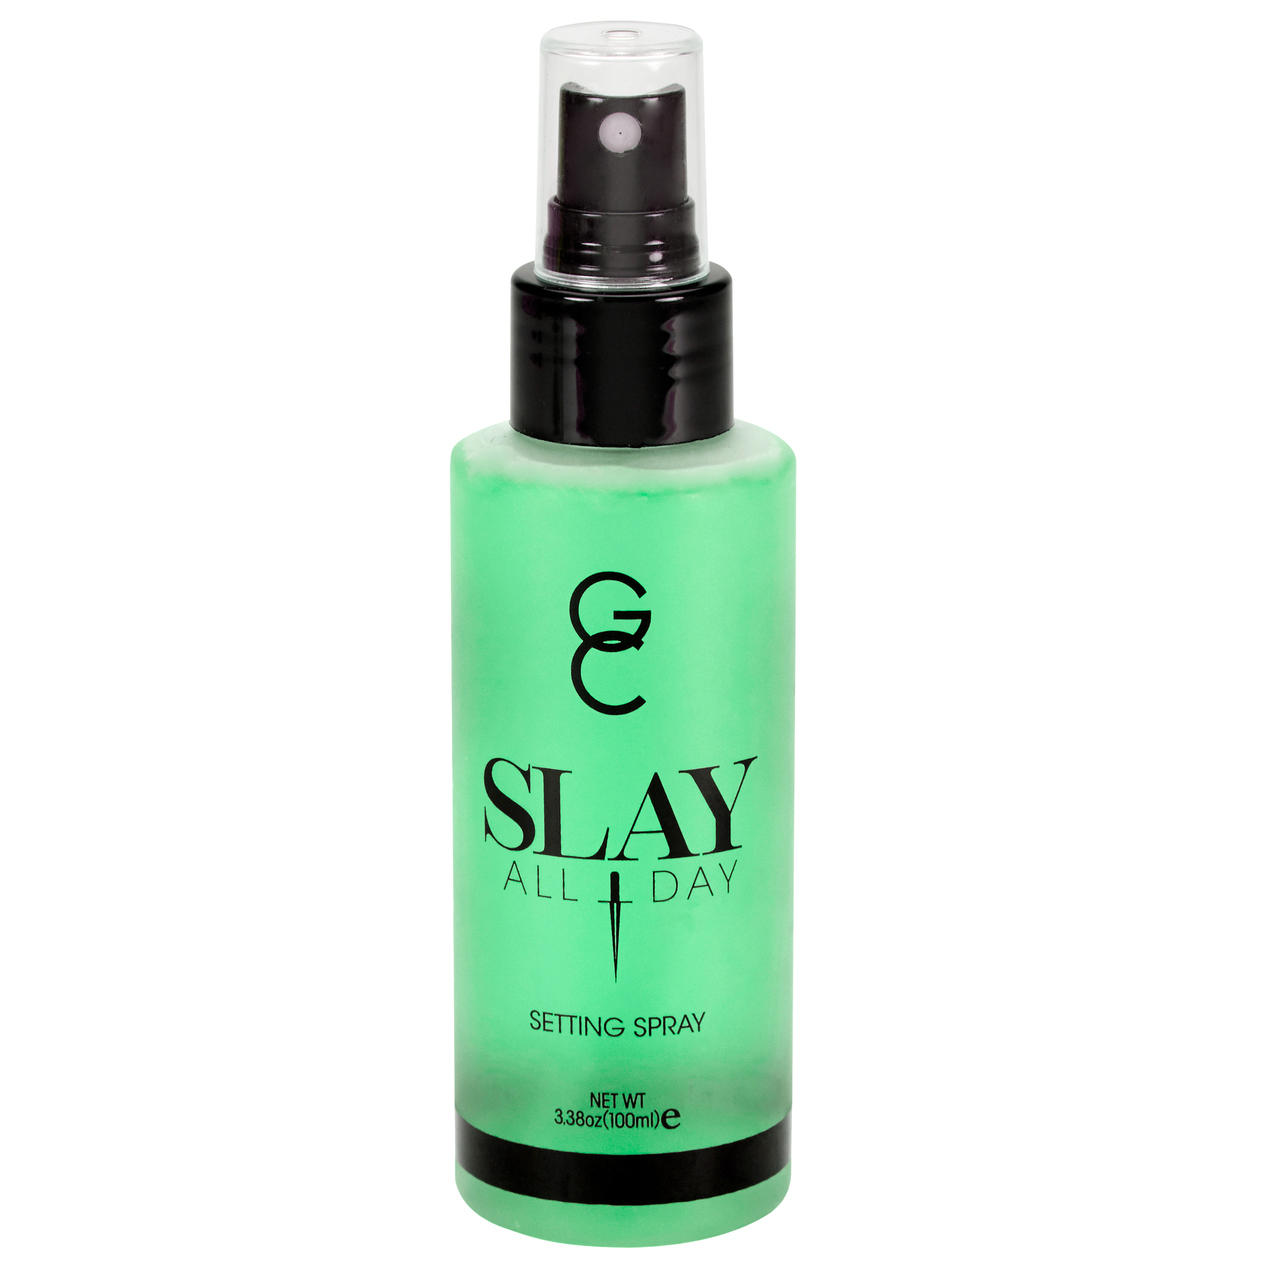 Gerard Cosmetics Slay All Day Setting Spray Cucumber